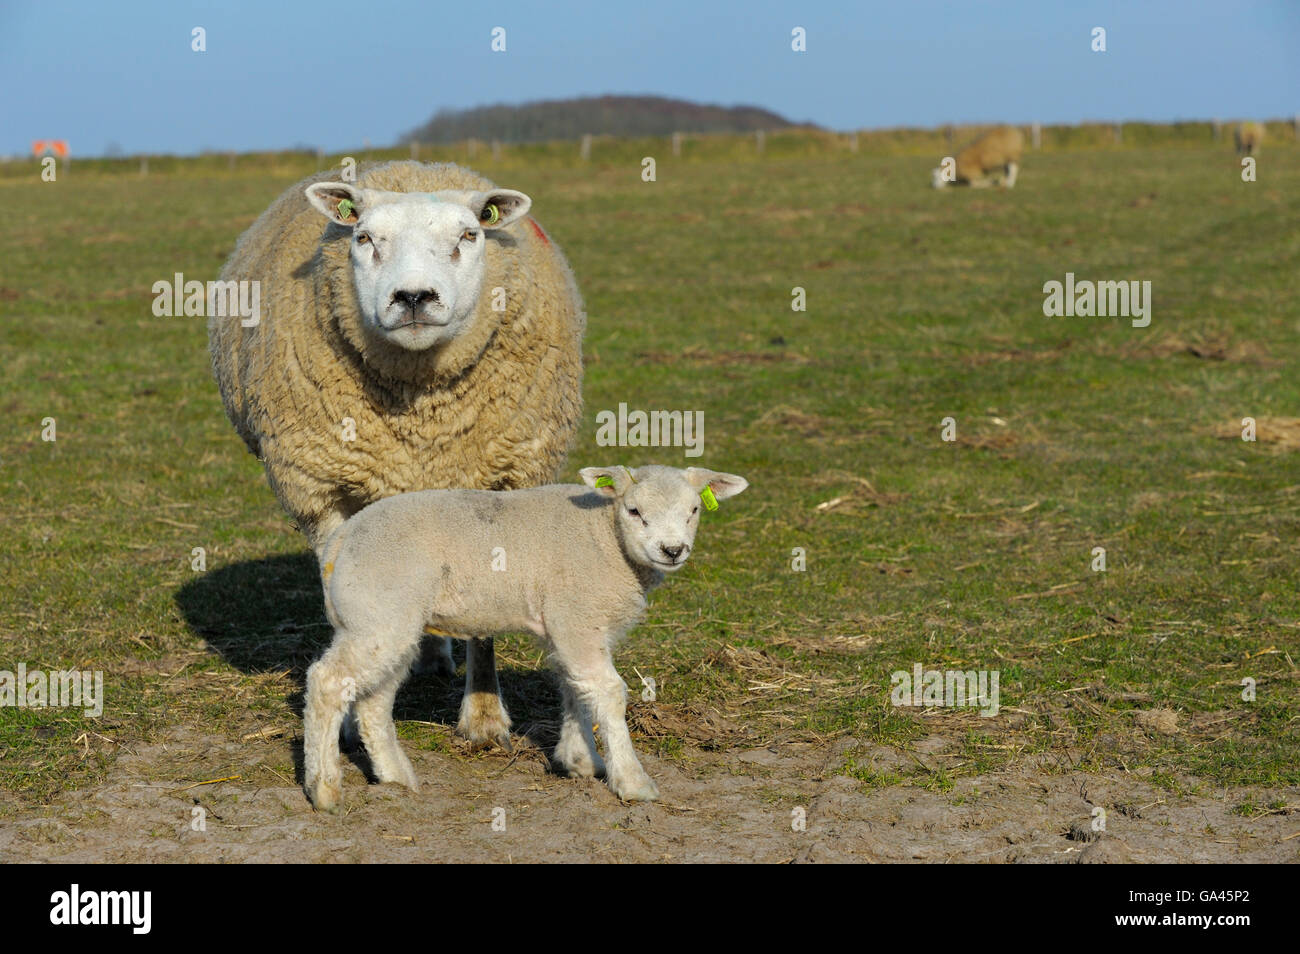 Texel sheep, ewe with lamb, Texel, Netherlands Stock Photo